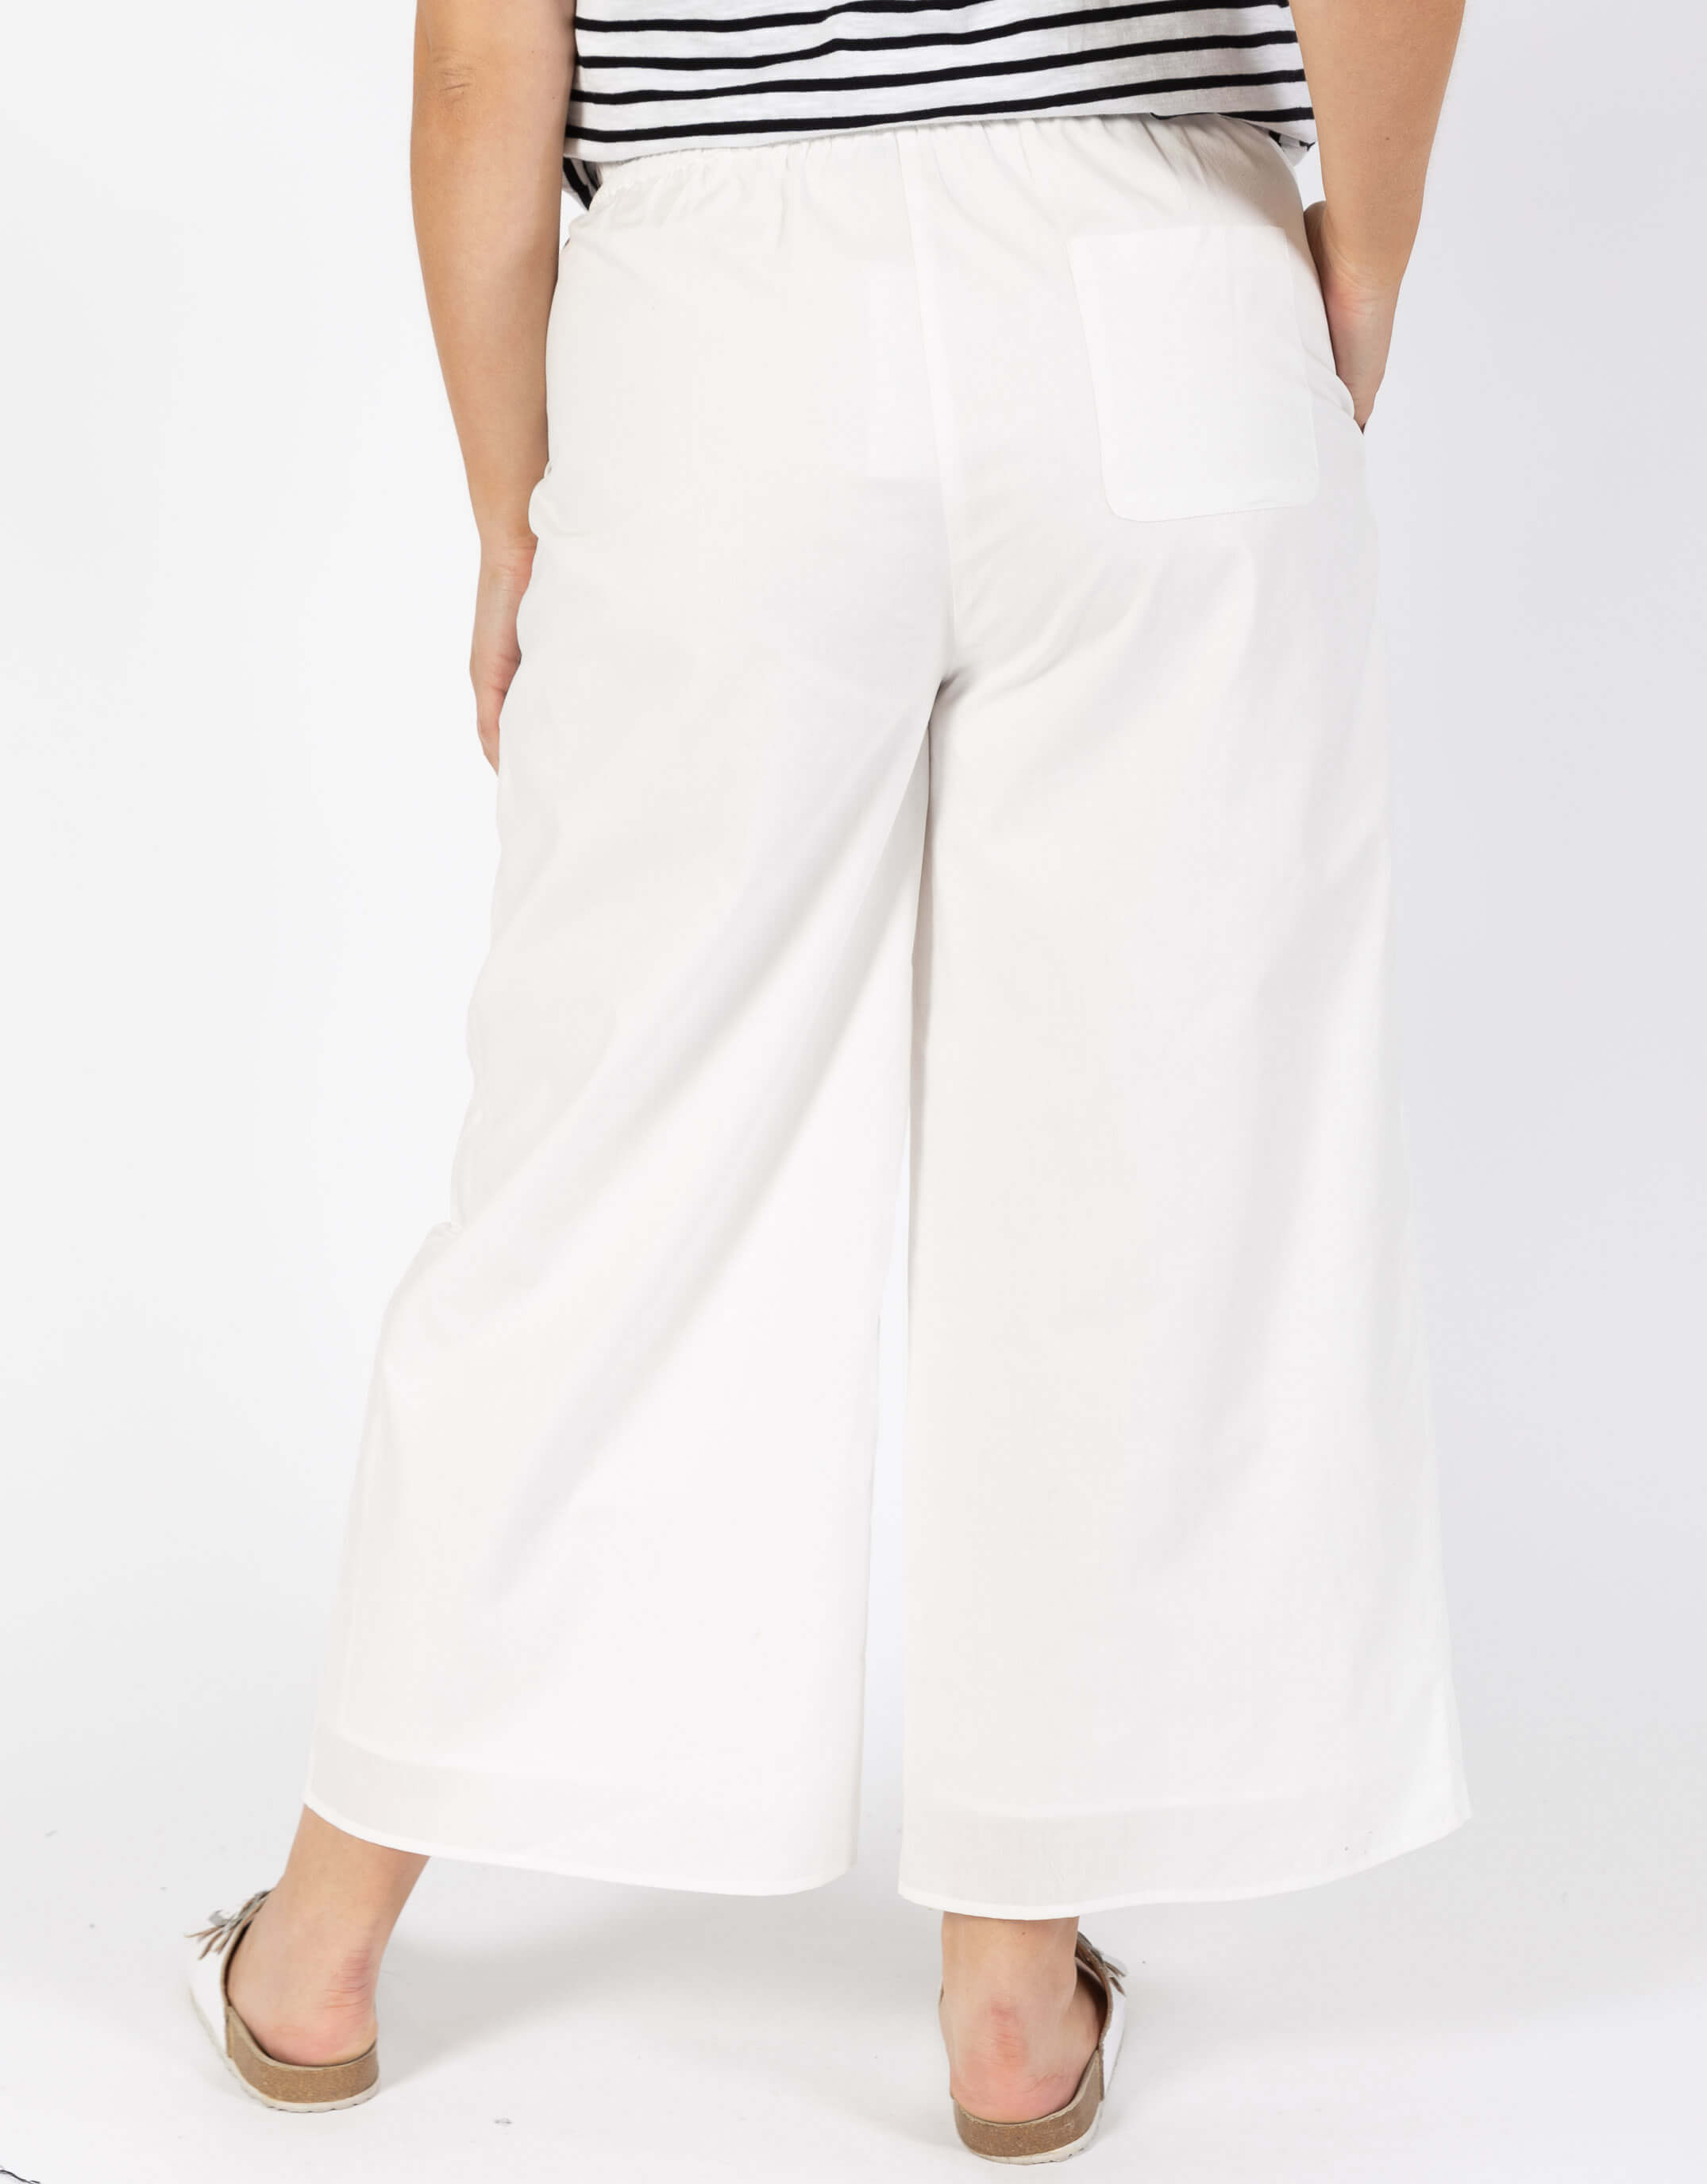 betty-basics-plus-size-lulu-pant-off-white-plus-size-clothing